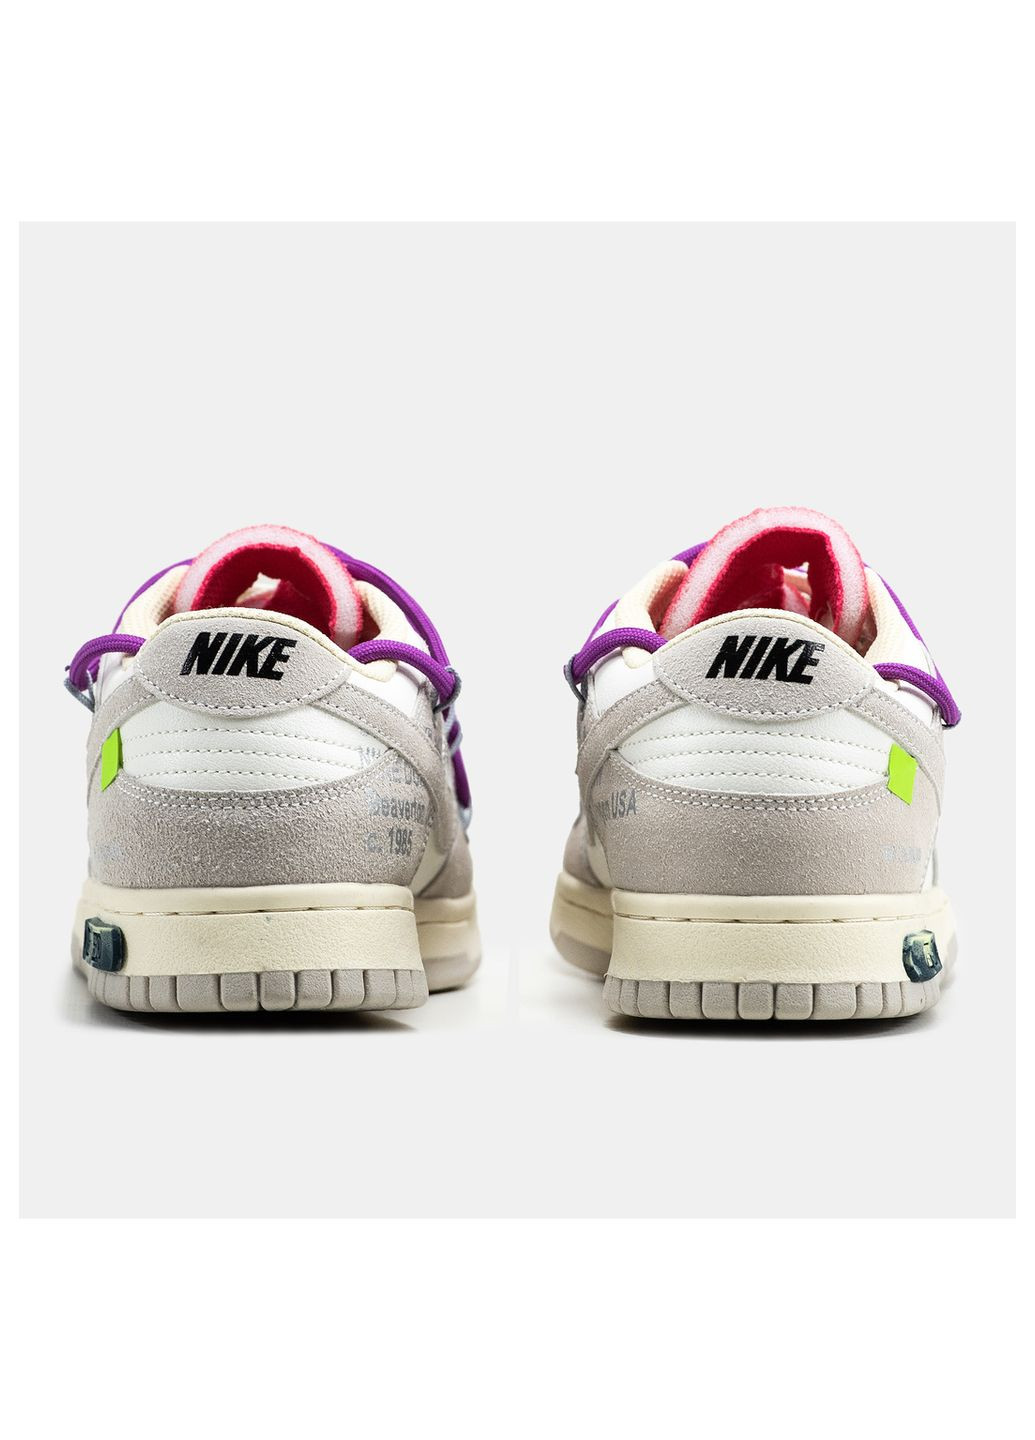 Сірі осінні кросівки жіночі Nike SB Dunk Low Off-White Lot 15 of 50